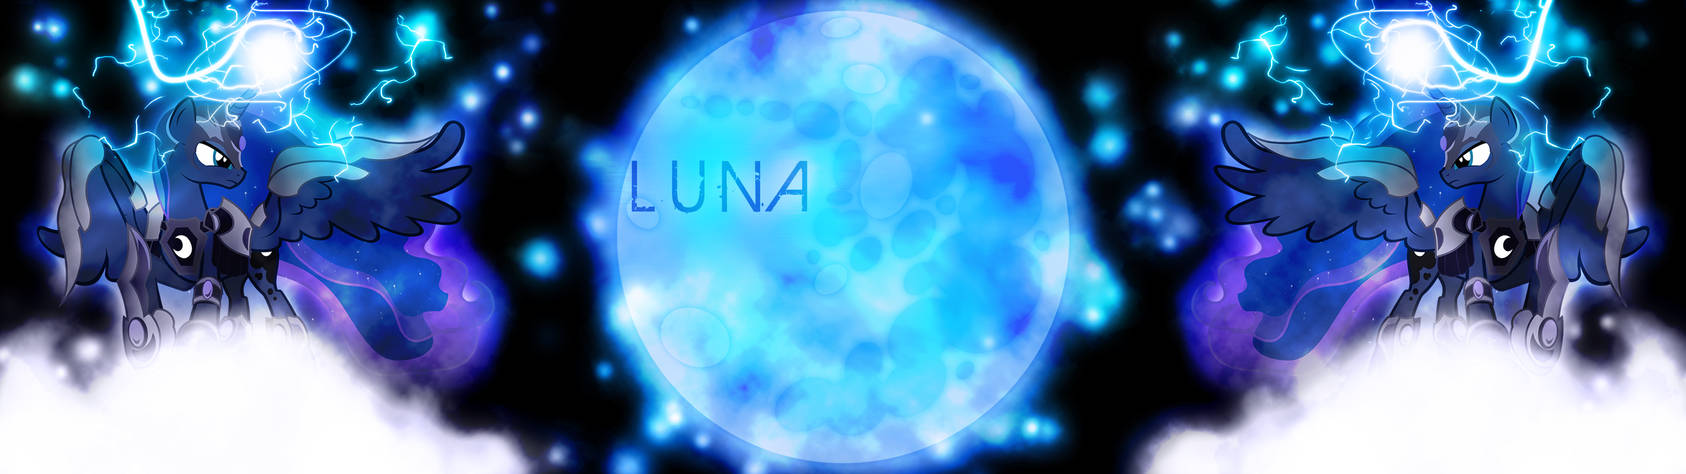 New Luna Wallpaper